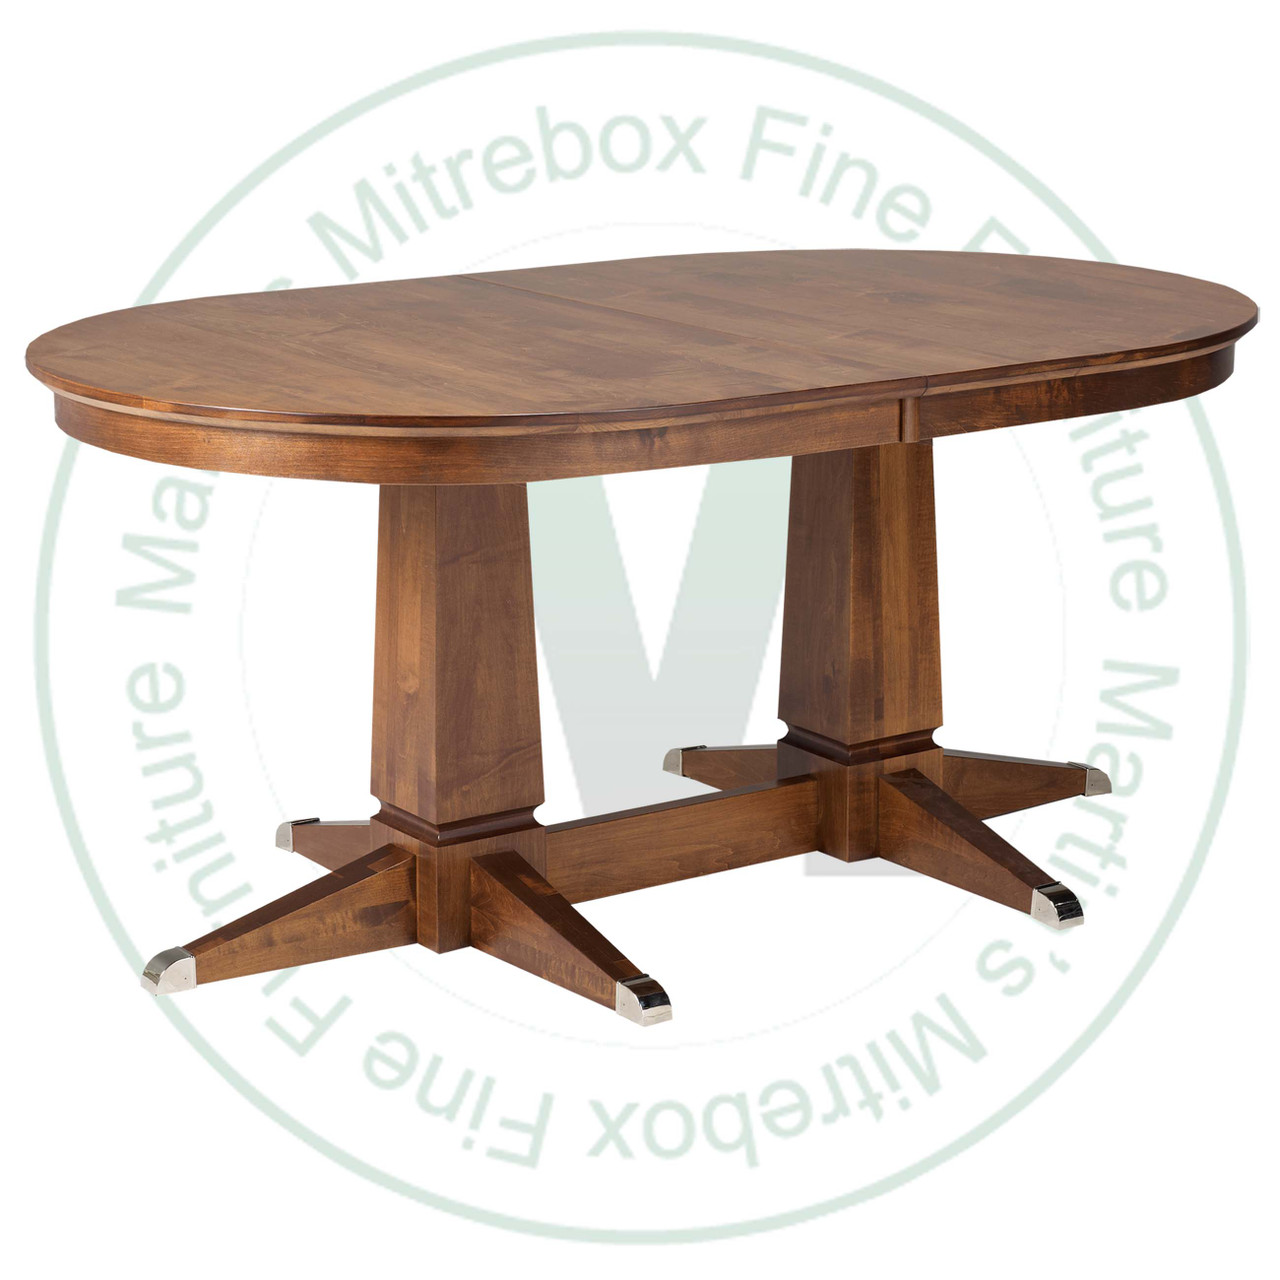 Oak Sweden Double Pedestal Table 42"D x 72"D x 30"H Solid Top.